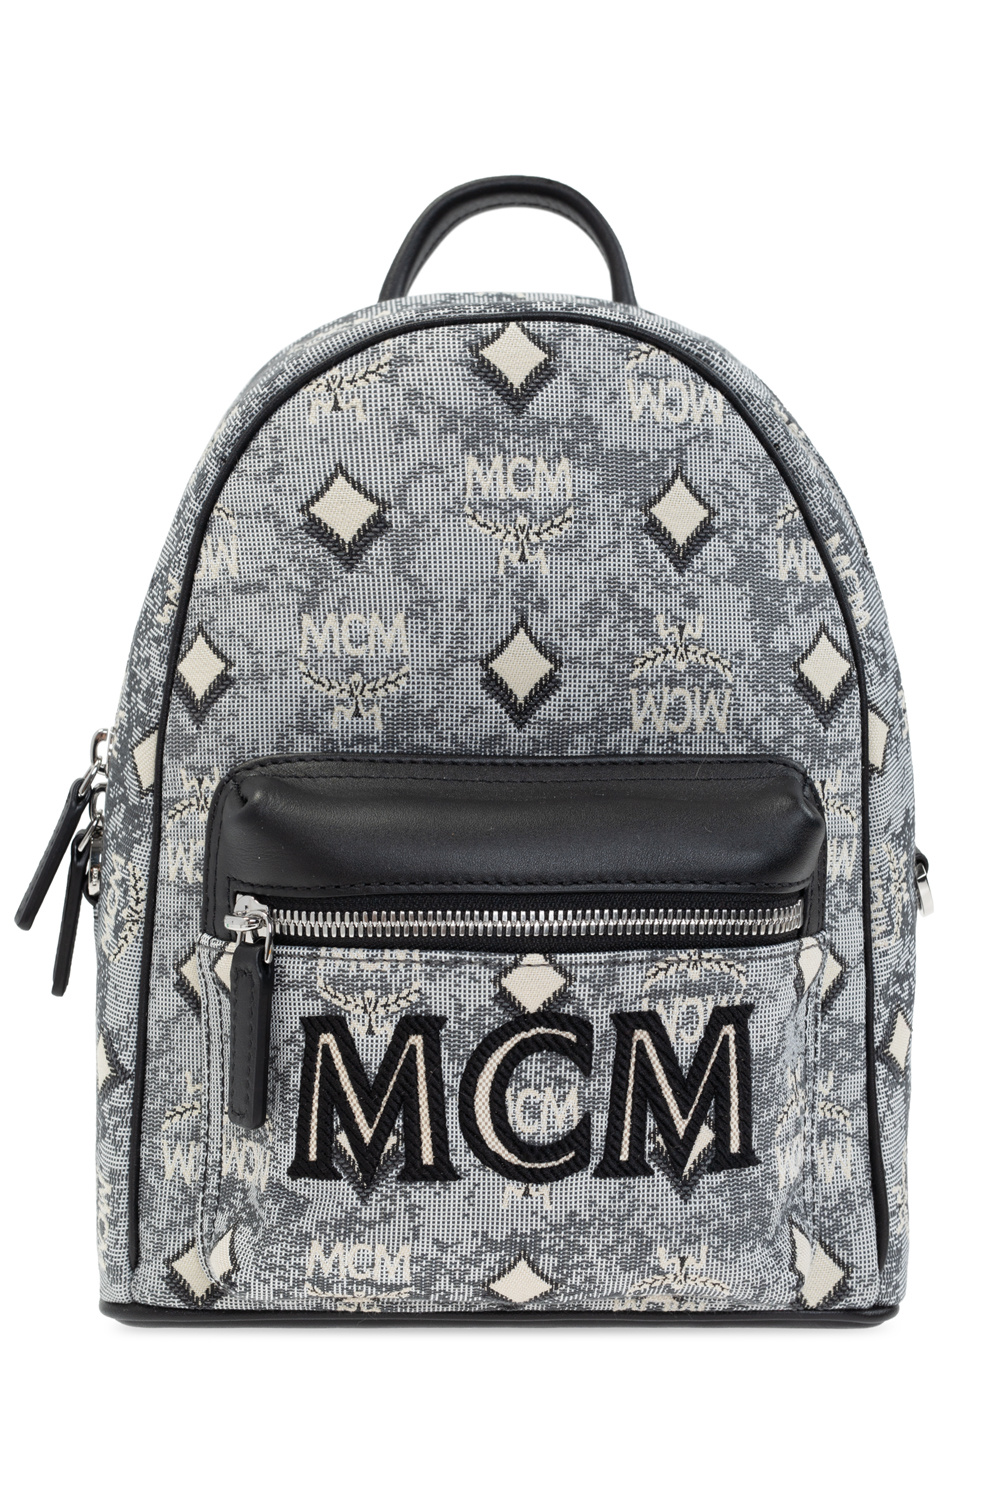 MCM Mini Vintage Jacquard Shoulder Bag in Black